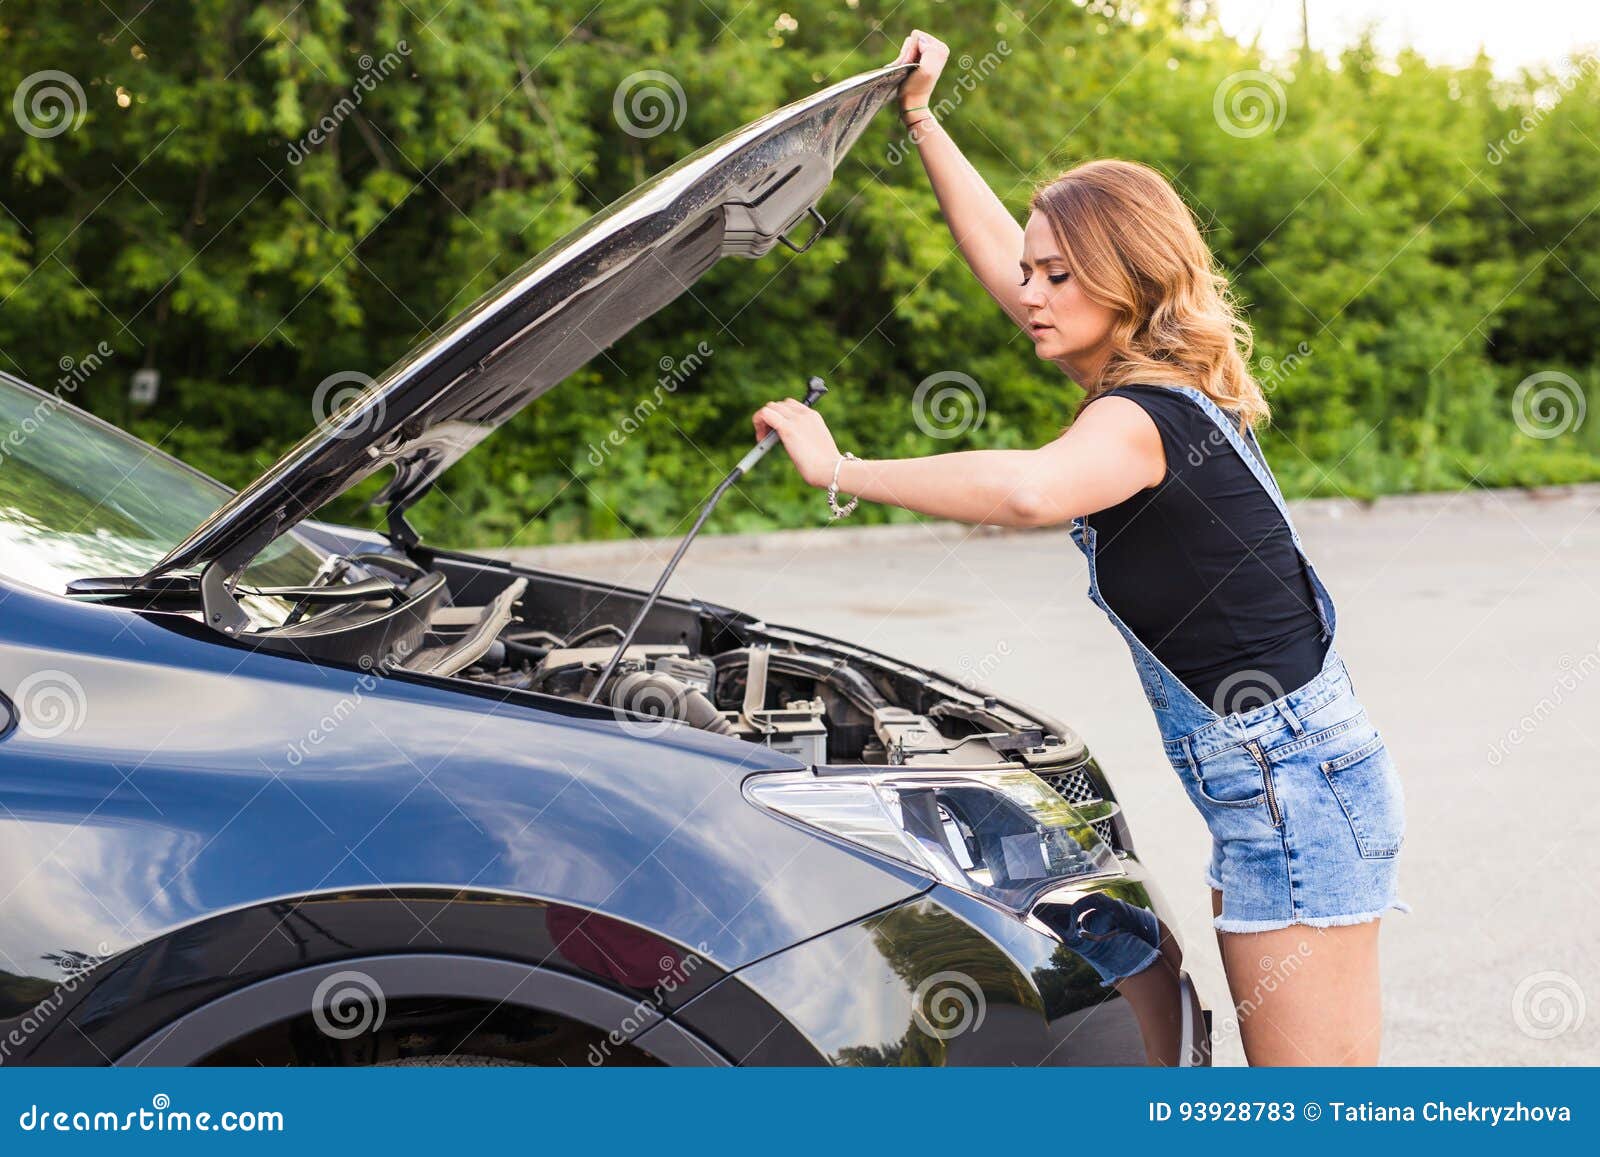 Похожим на женский капот. Открытый капот машины. Женщина на капоте. Девушка и открытый капот. Девушка открывает капот авто.